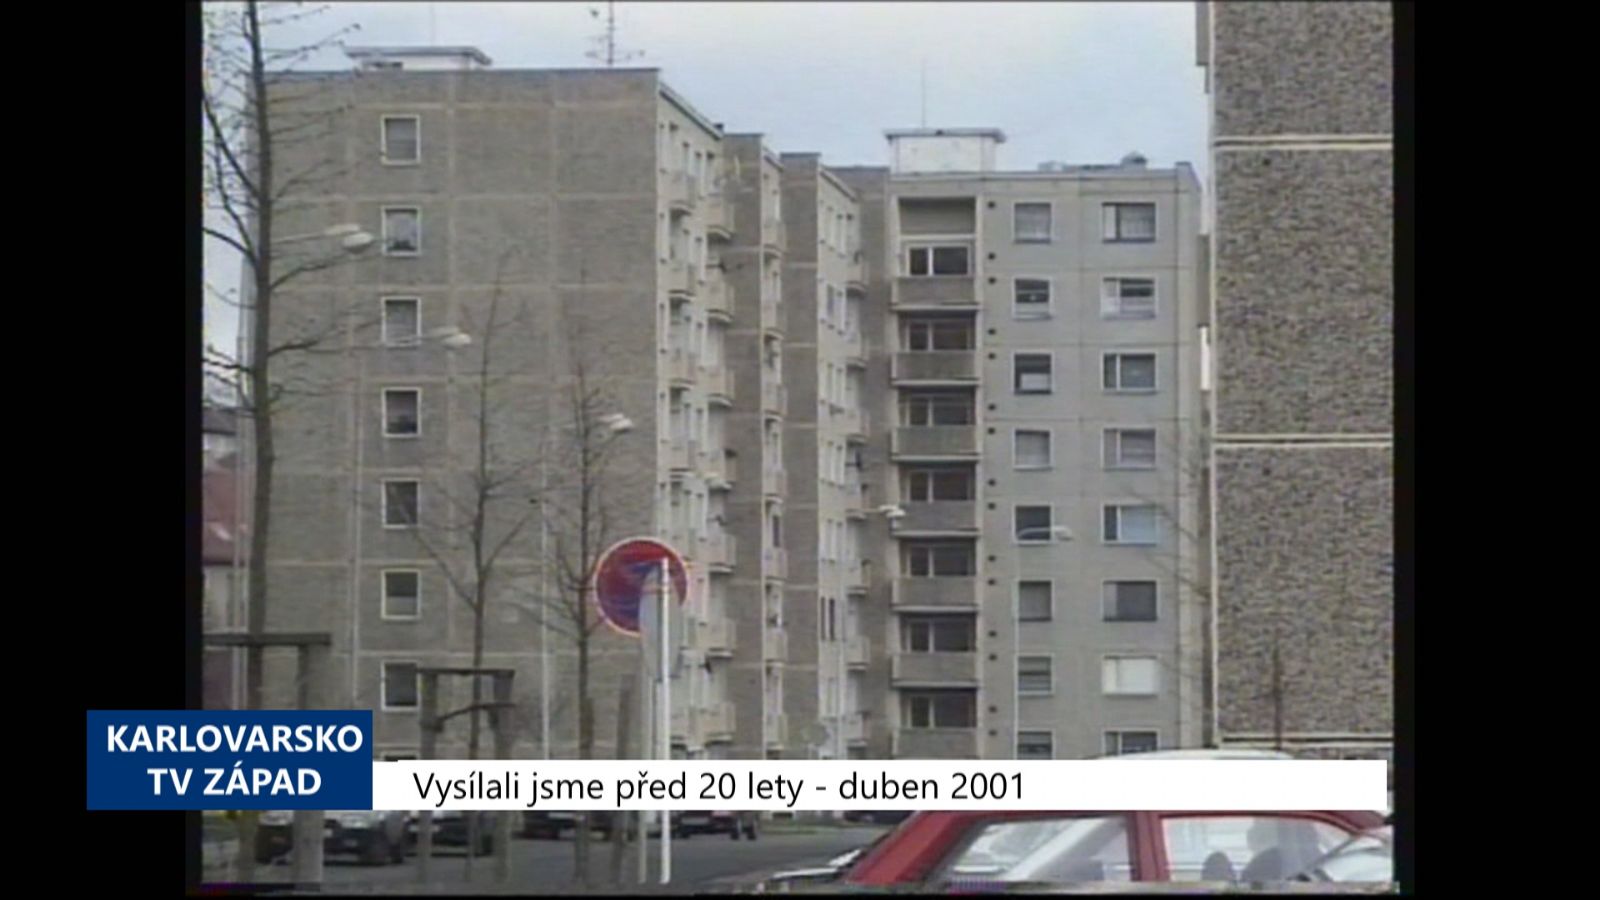 2001 – Sokolov: Ceny nájmů v obecních bytech se zvýší (TV západ)